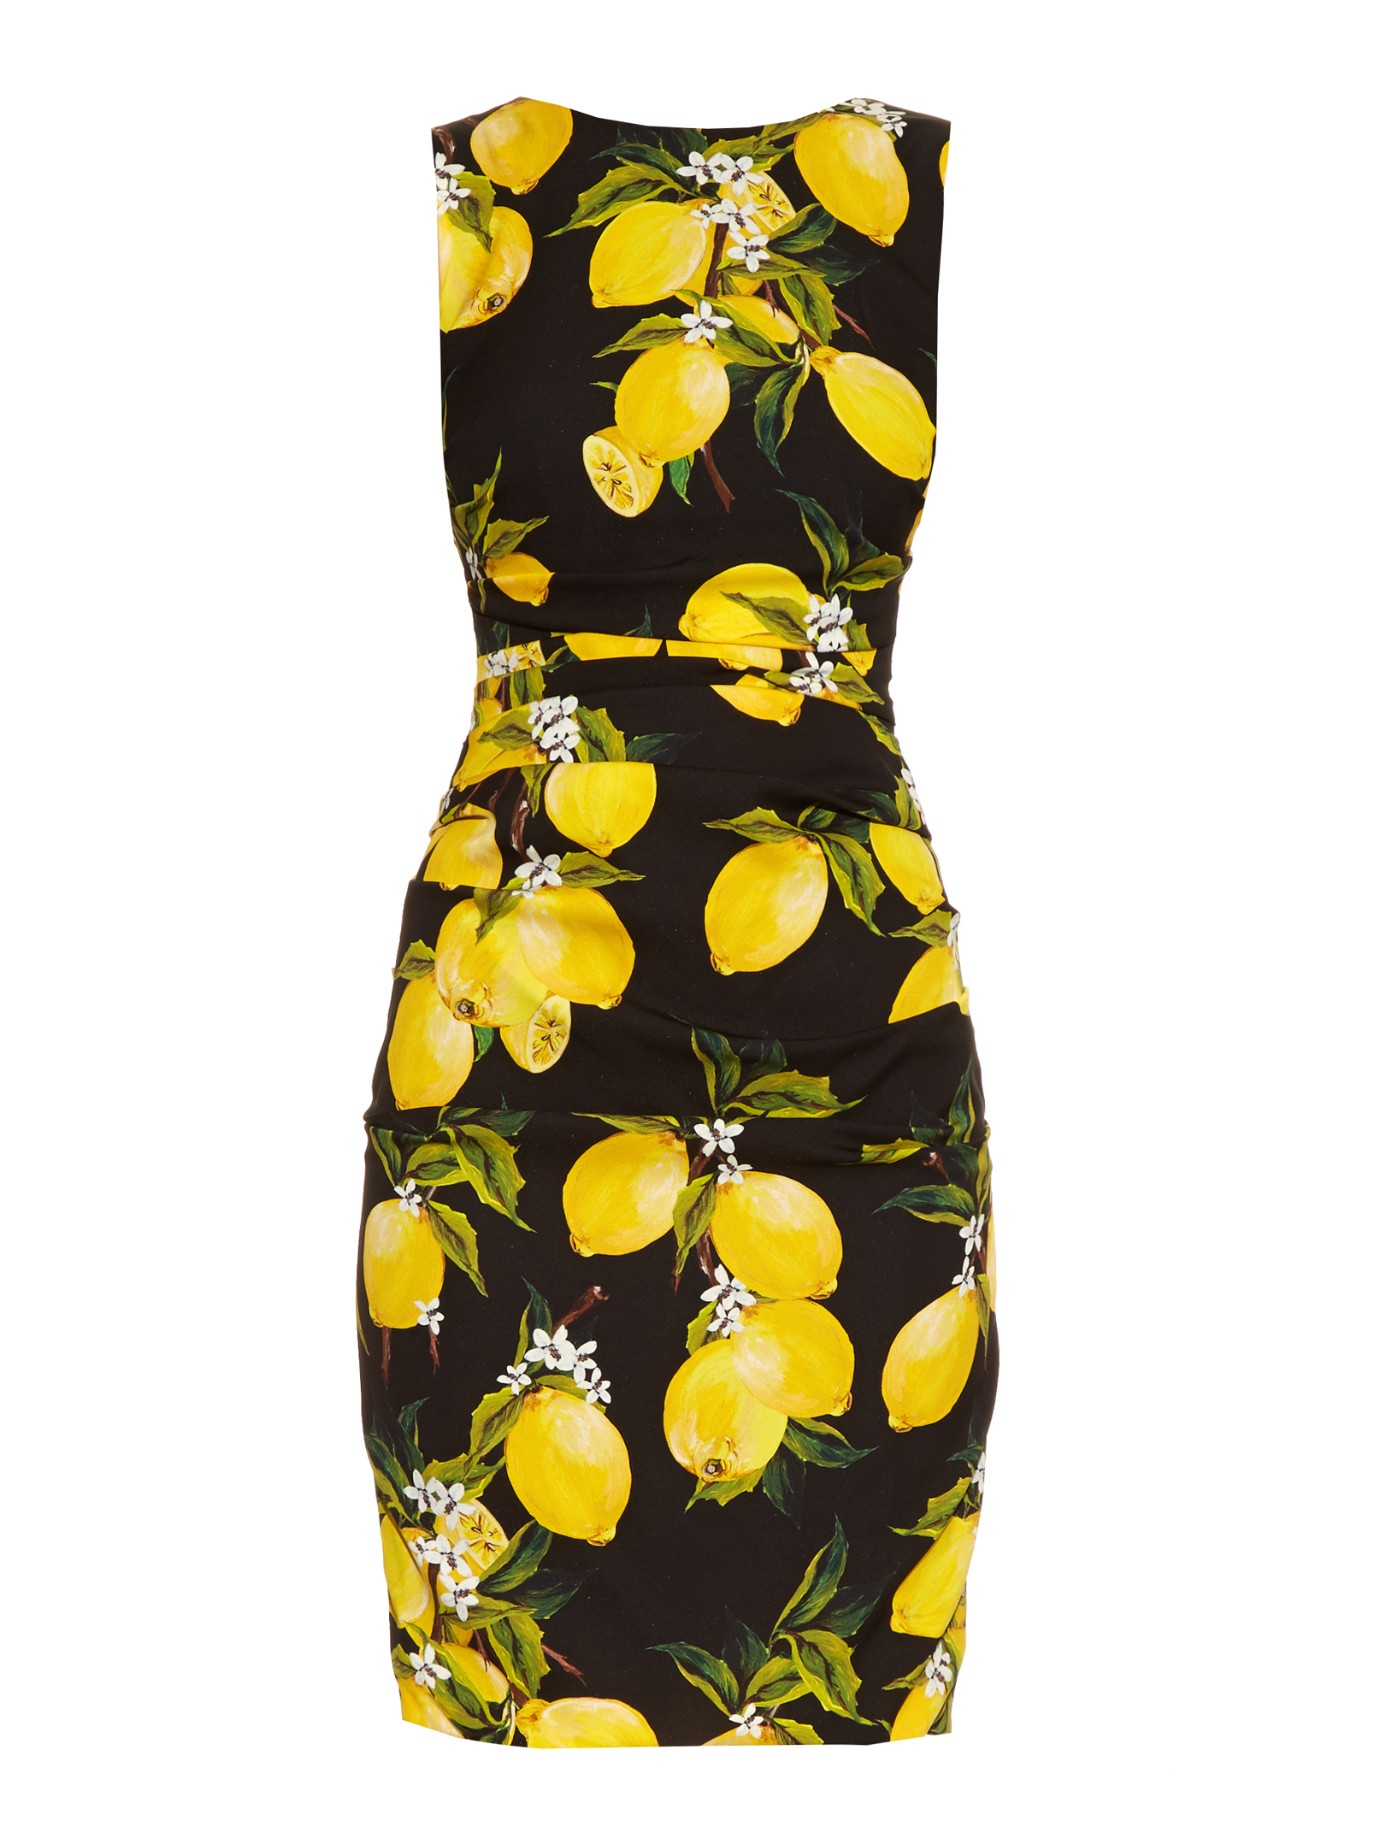 Buy > lemon print sundress > in stock